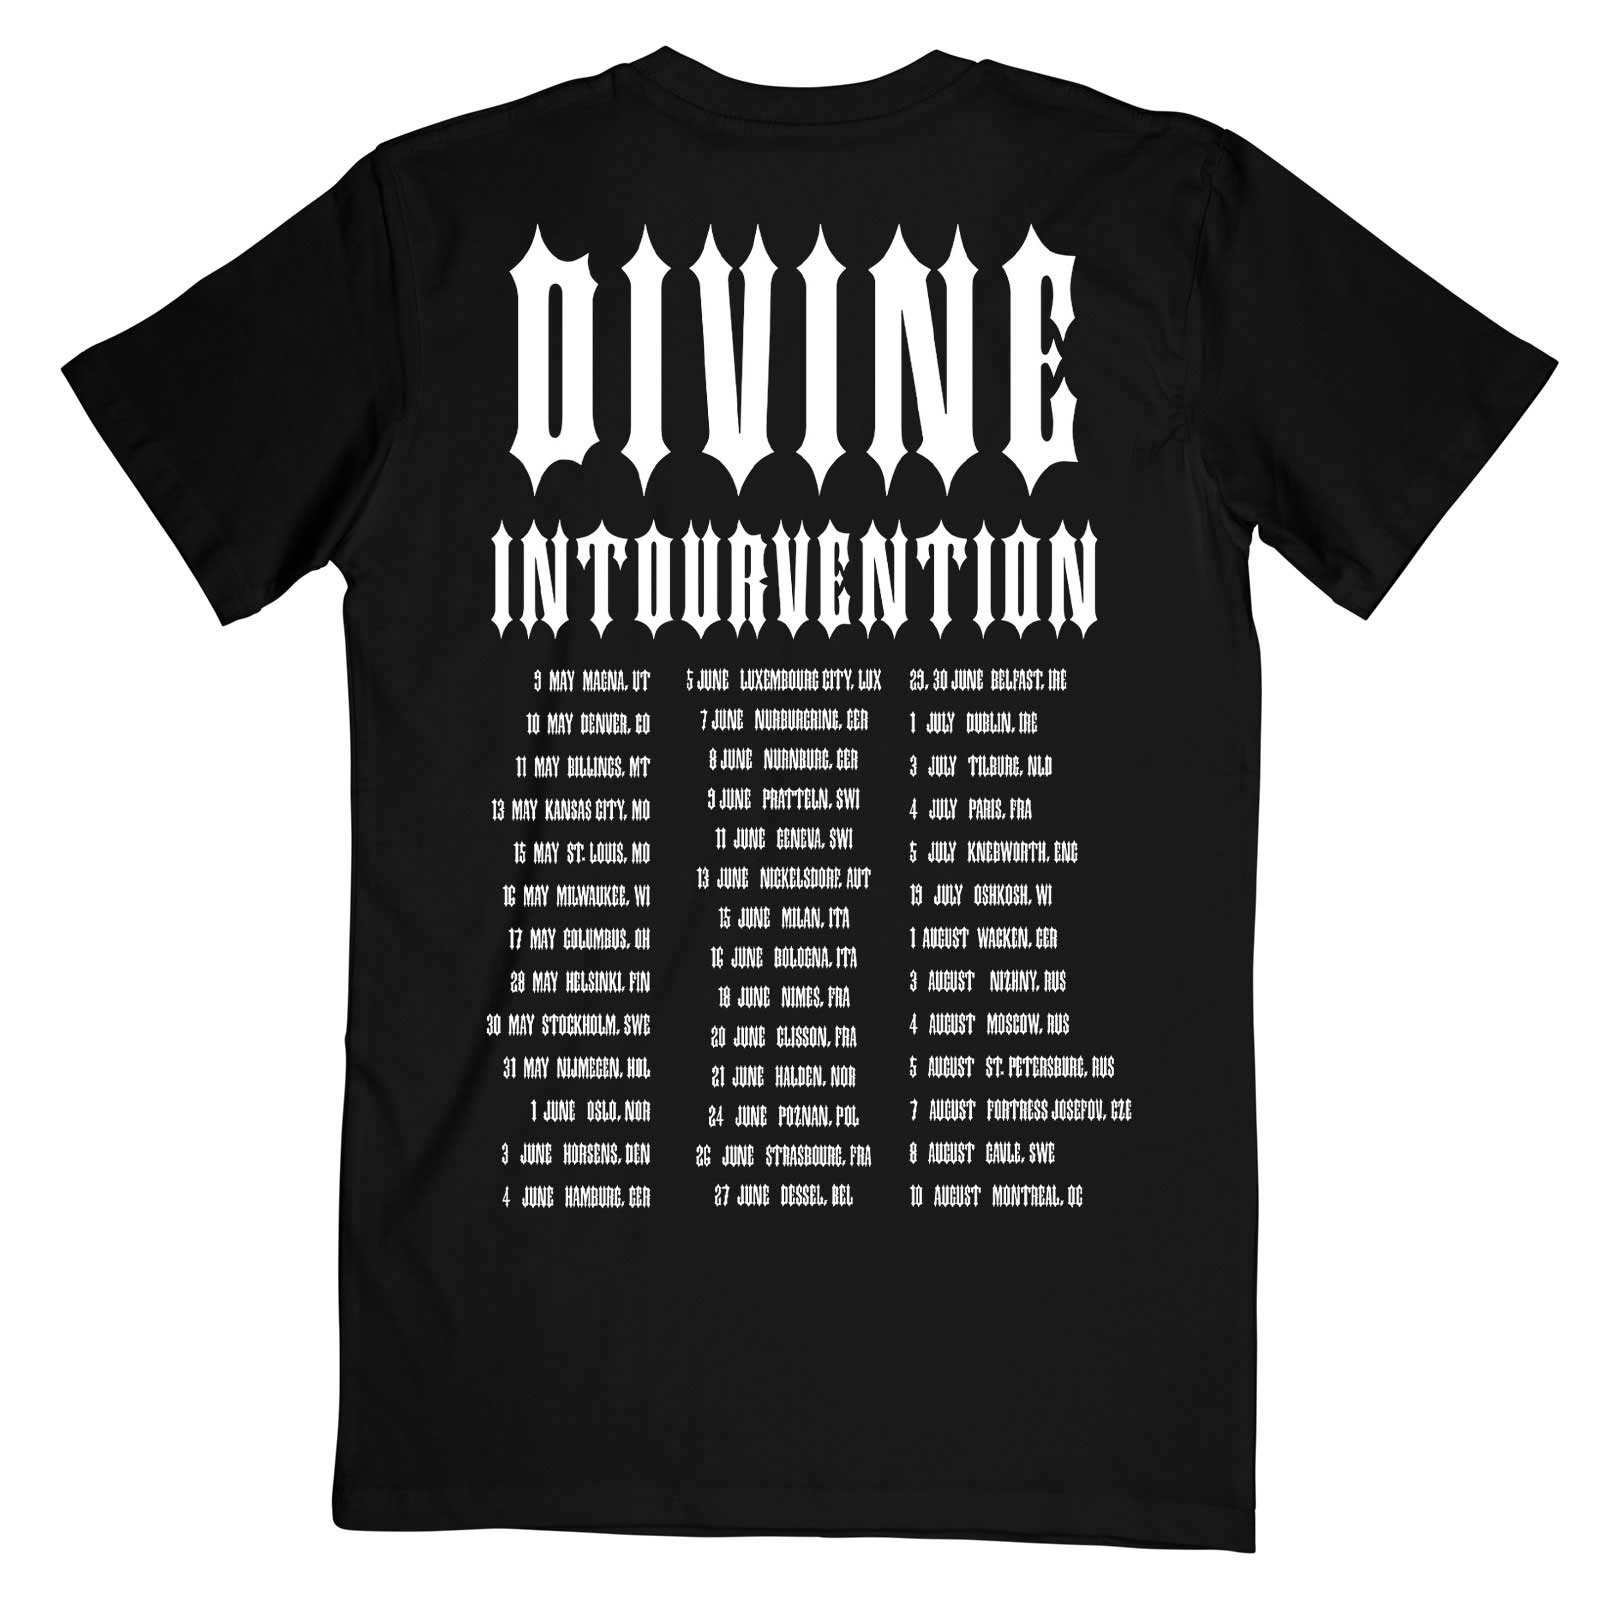 T-shirt Slayer Divine Intourvention tour 2014